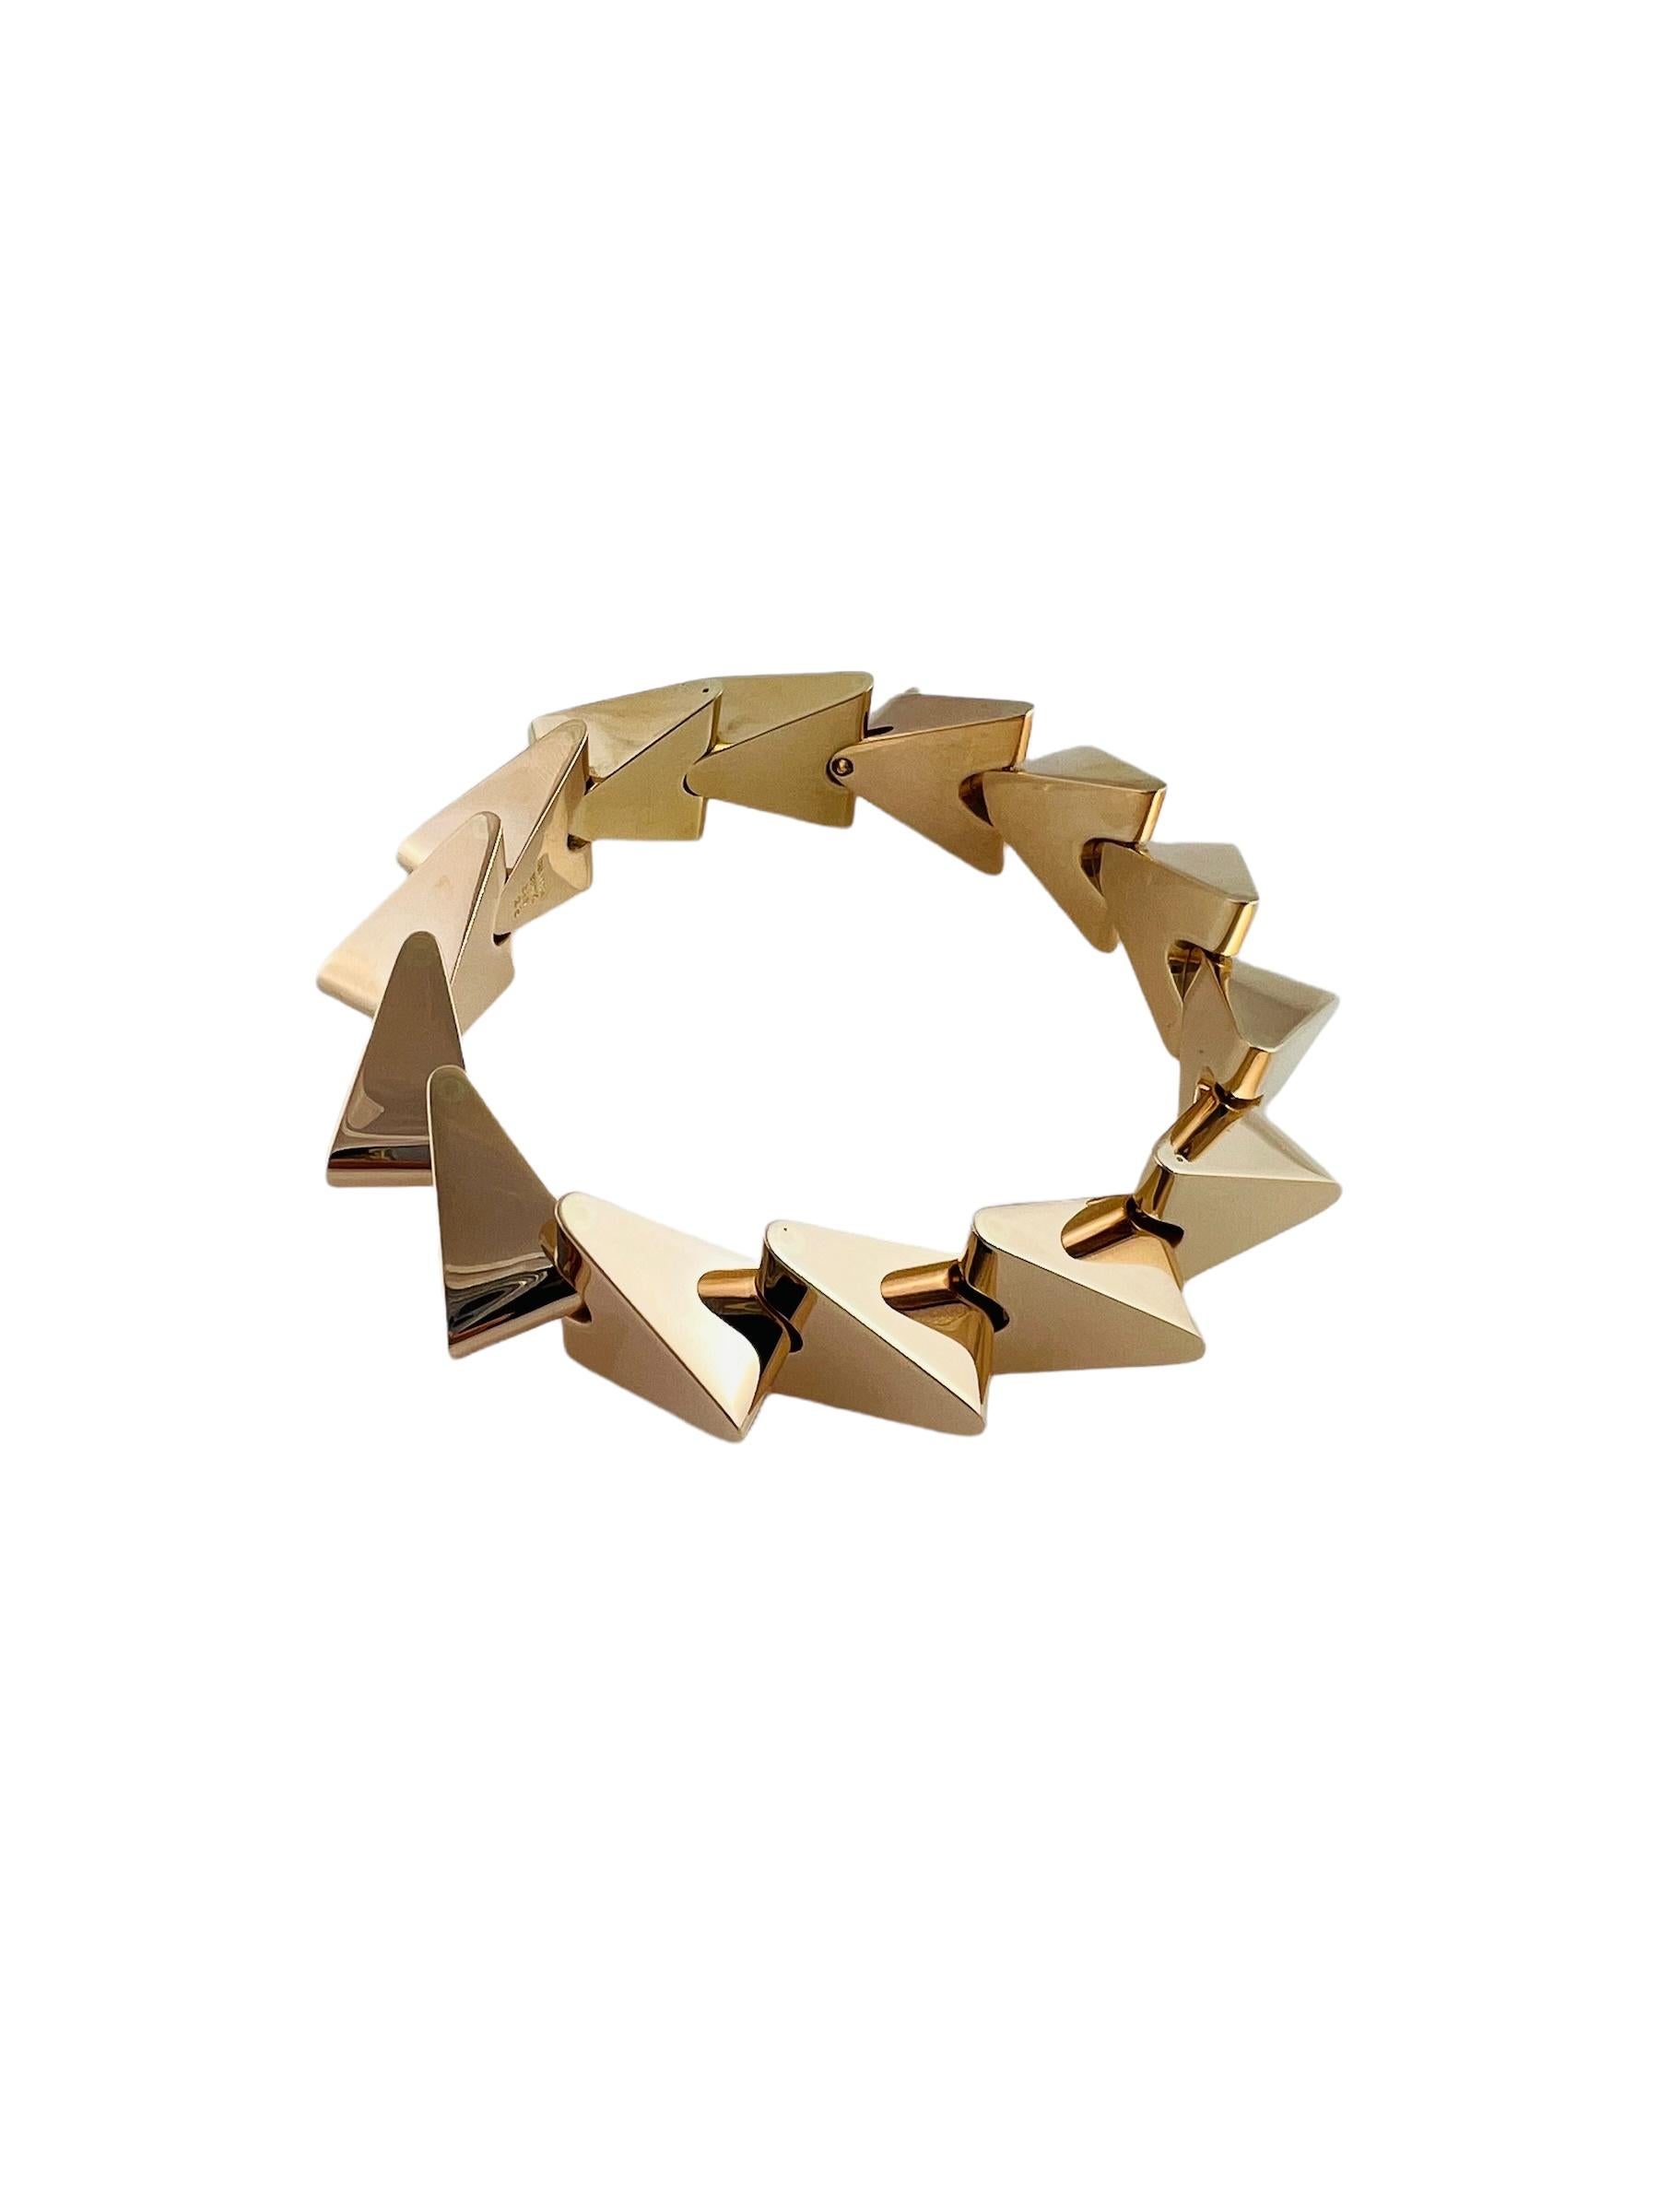 Vintage Bent Knudsen Denmark 14K Rose Gold Modernist Triangle Bracelet

This gorgeous modernist bracelet by Bent Knudsen ( 1924 - 1997 )is set in 14K rose gold

This bracelet is 8